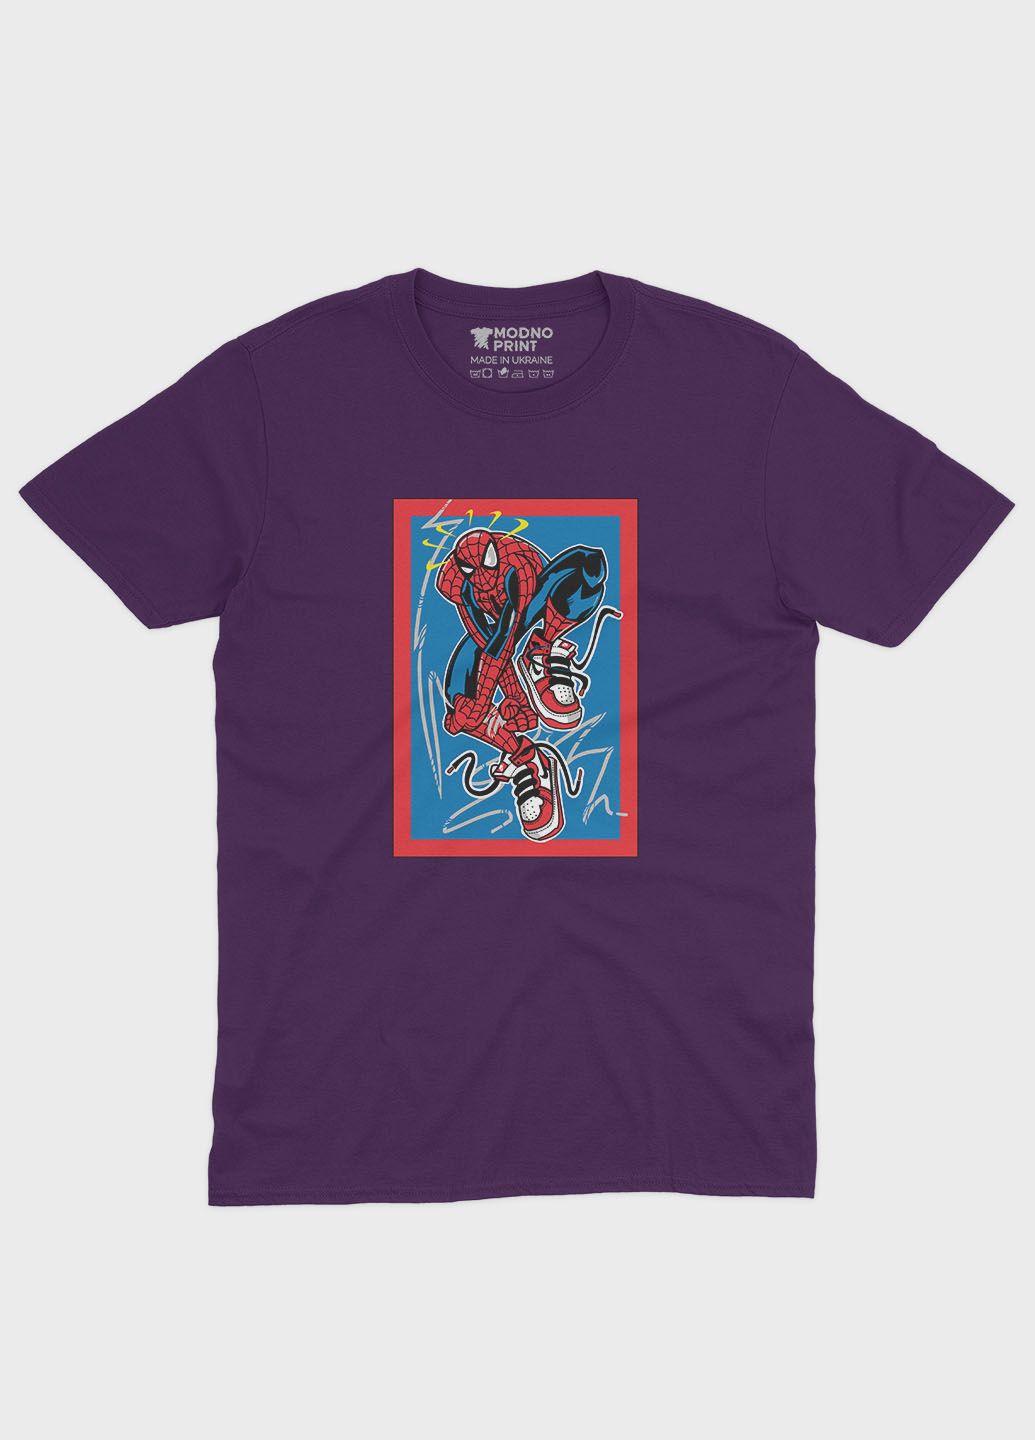 Фіолетова демісезонна футболка для дівчинки з принтом супергероя - людина-павук (ts001-1-dby-006-014-067-g) Modno